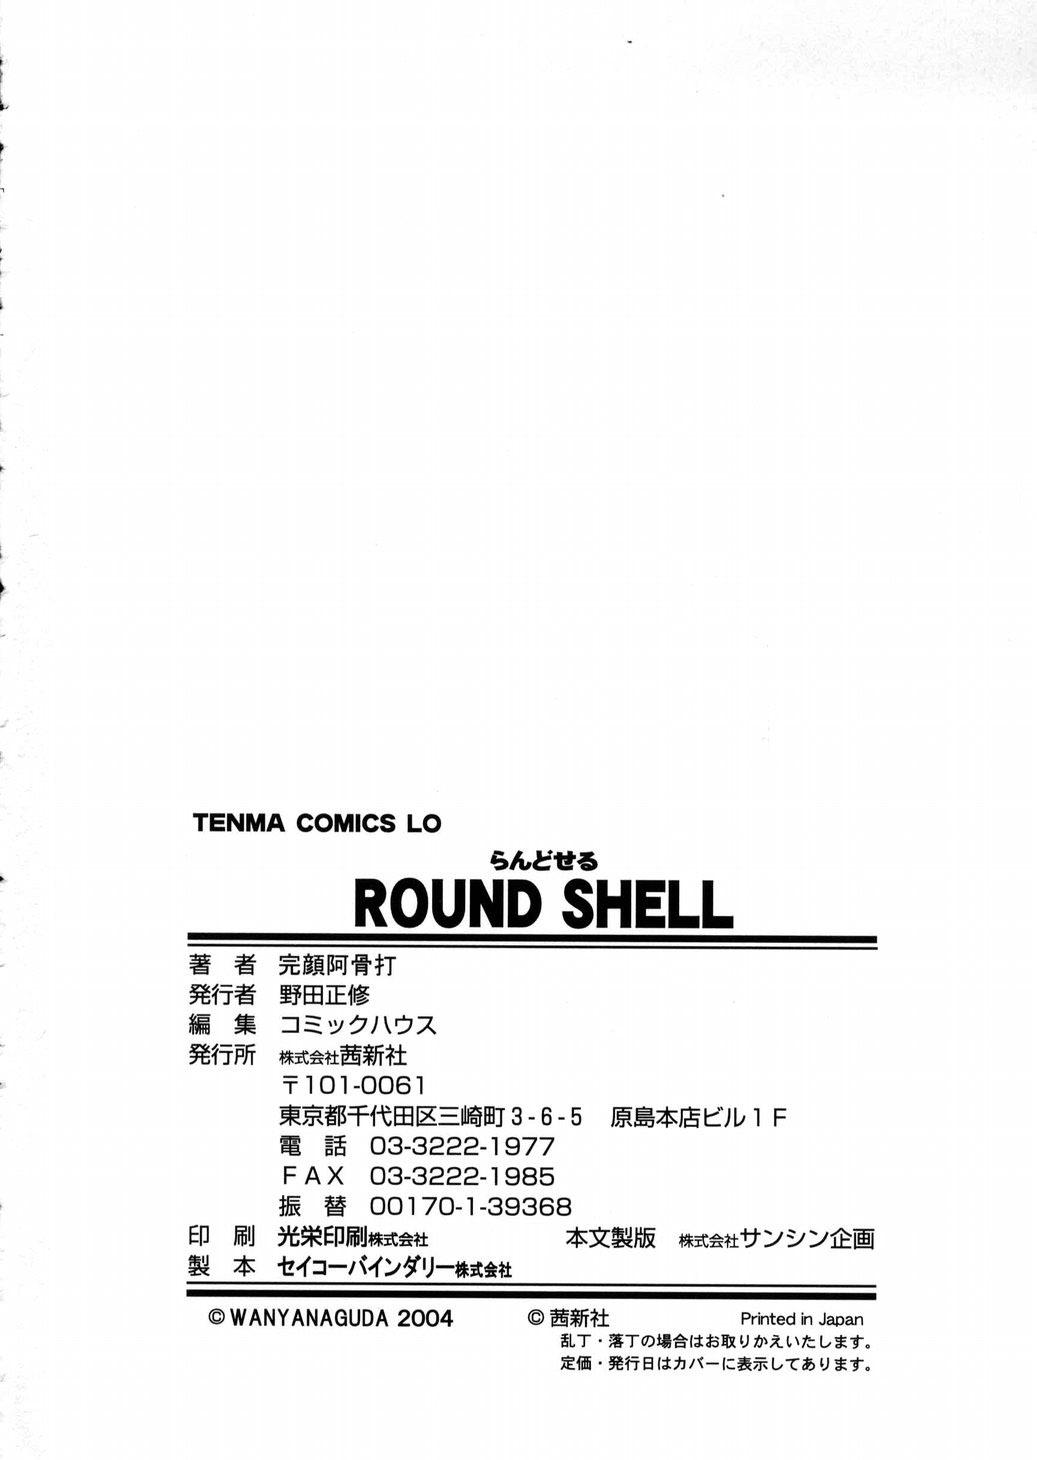 Round Shell 145